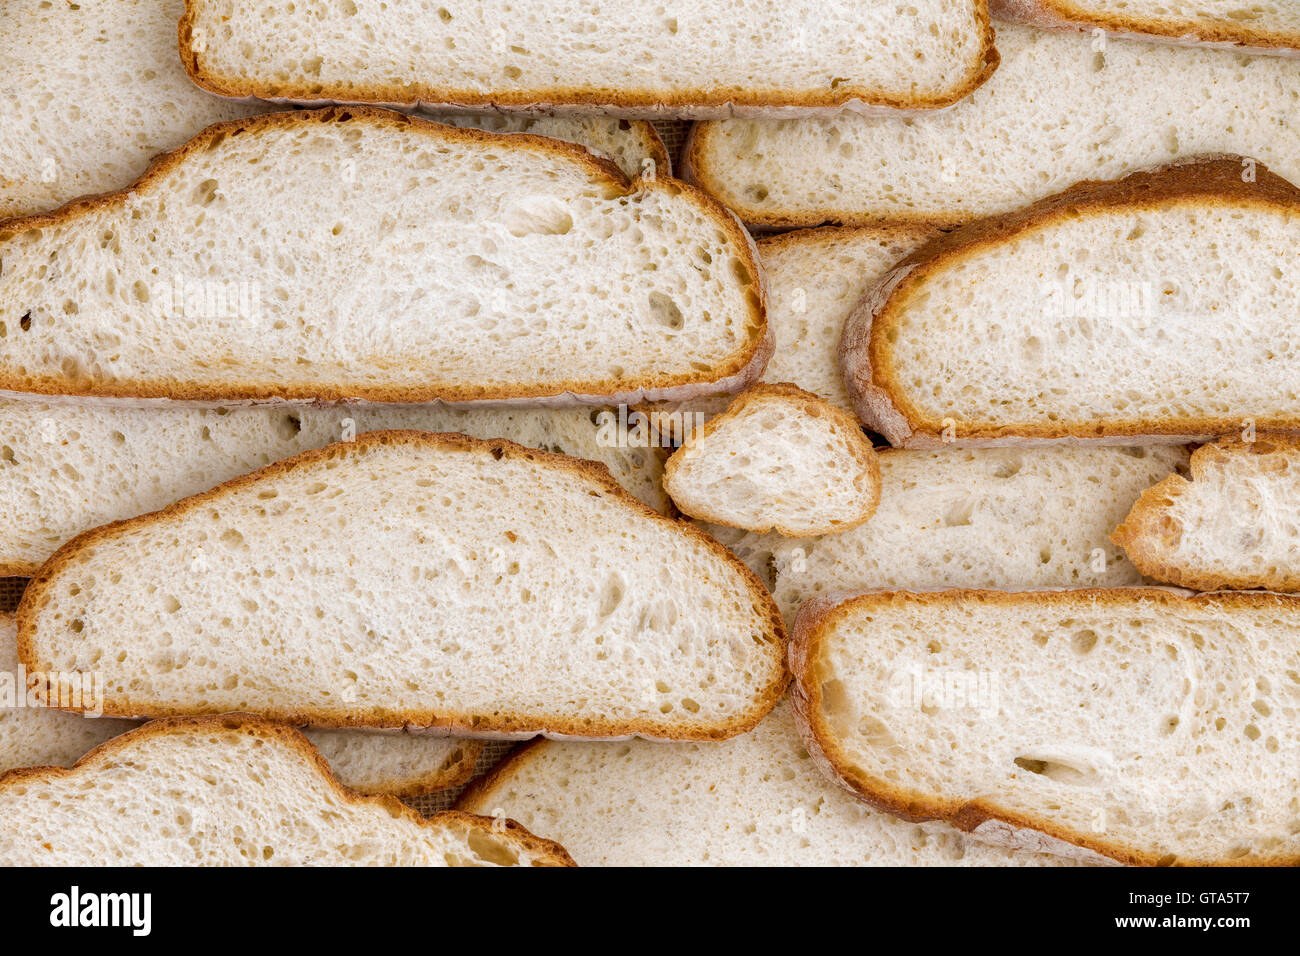 Mur d'accueil fait diverses tranches de pain de taille moyenne comme arrière-plan de concept sur l'alimentation et la nutrition glucides. Copie des savs Banque D'Images